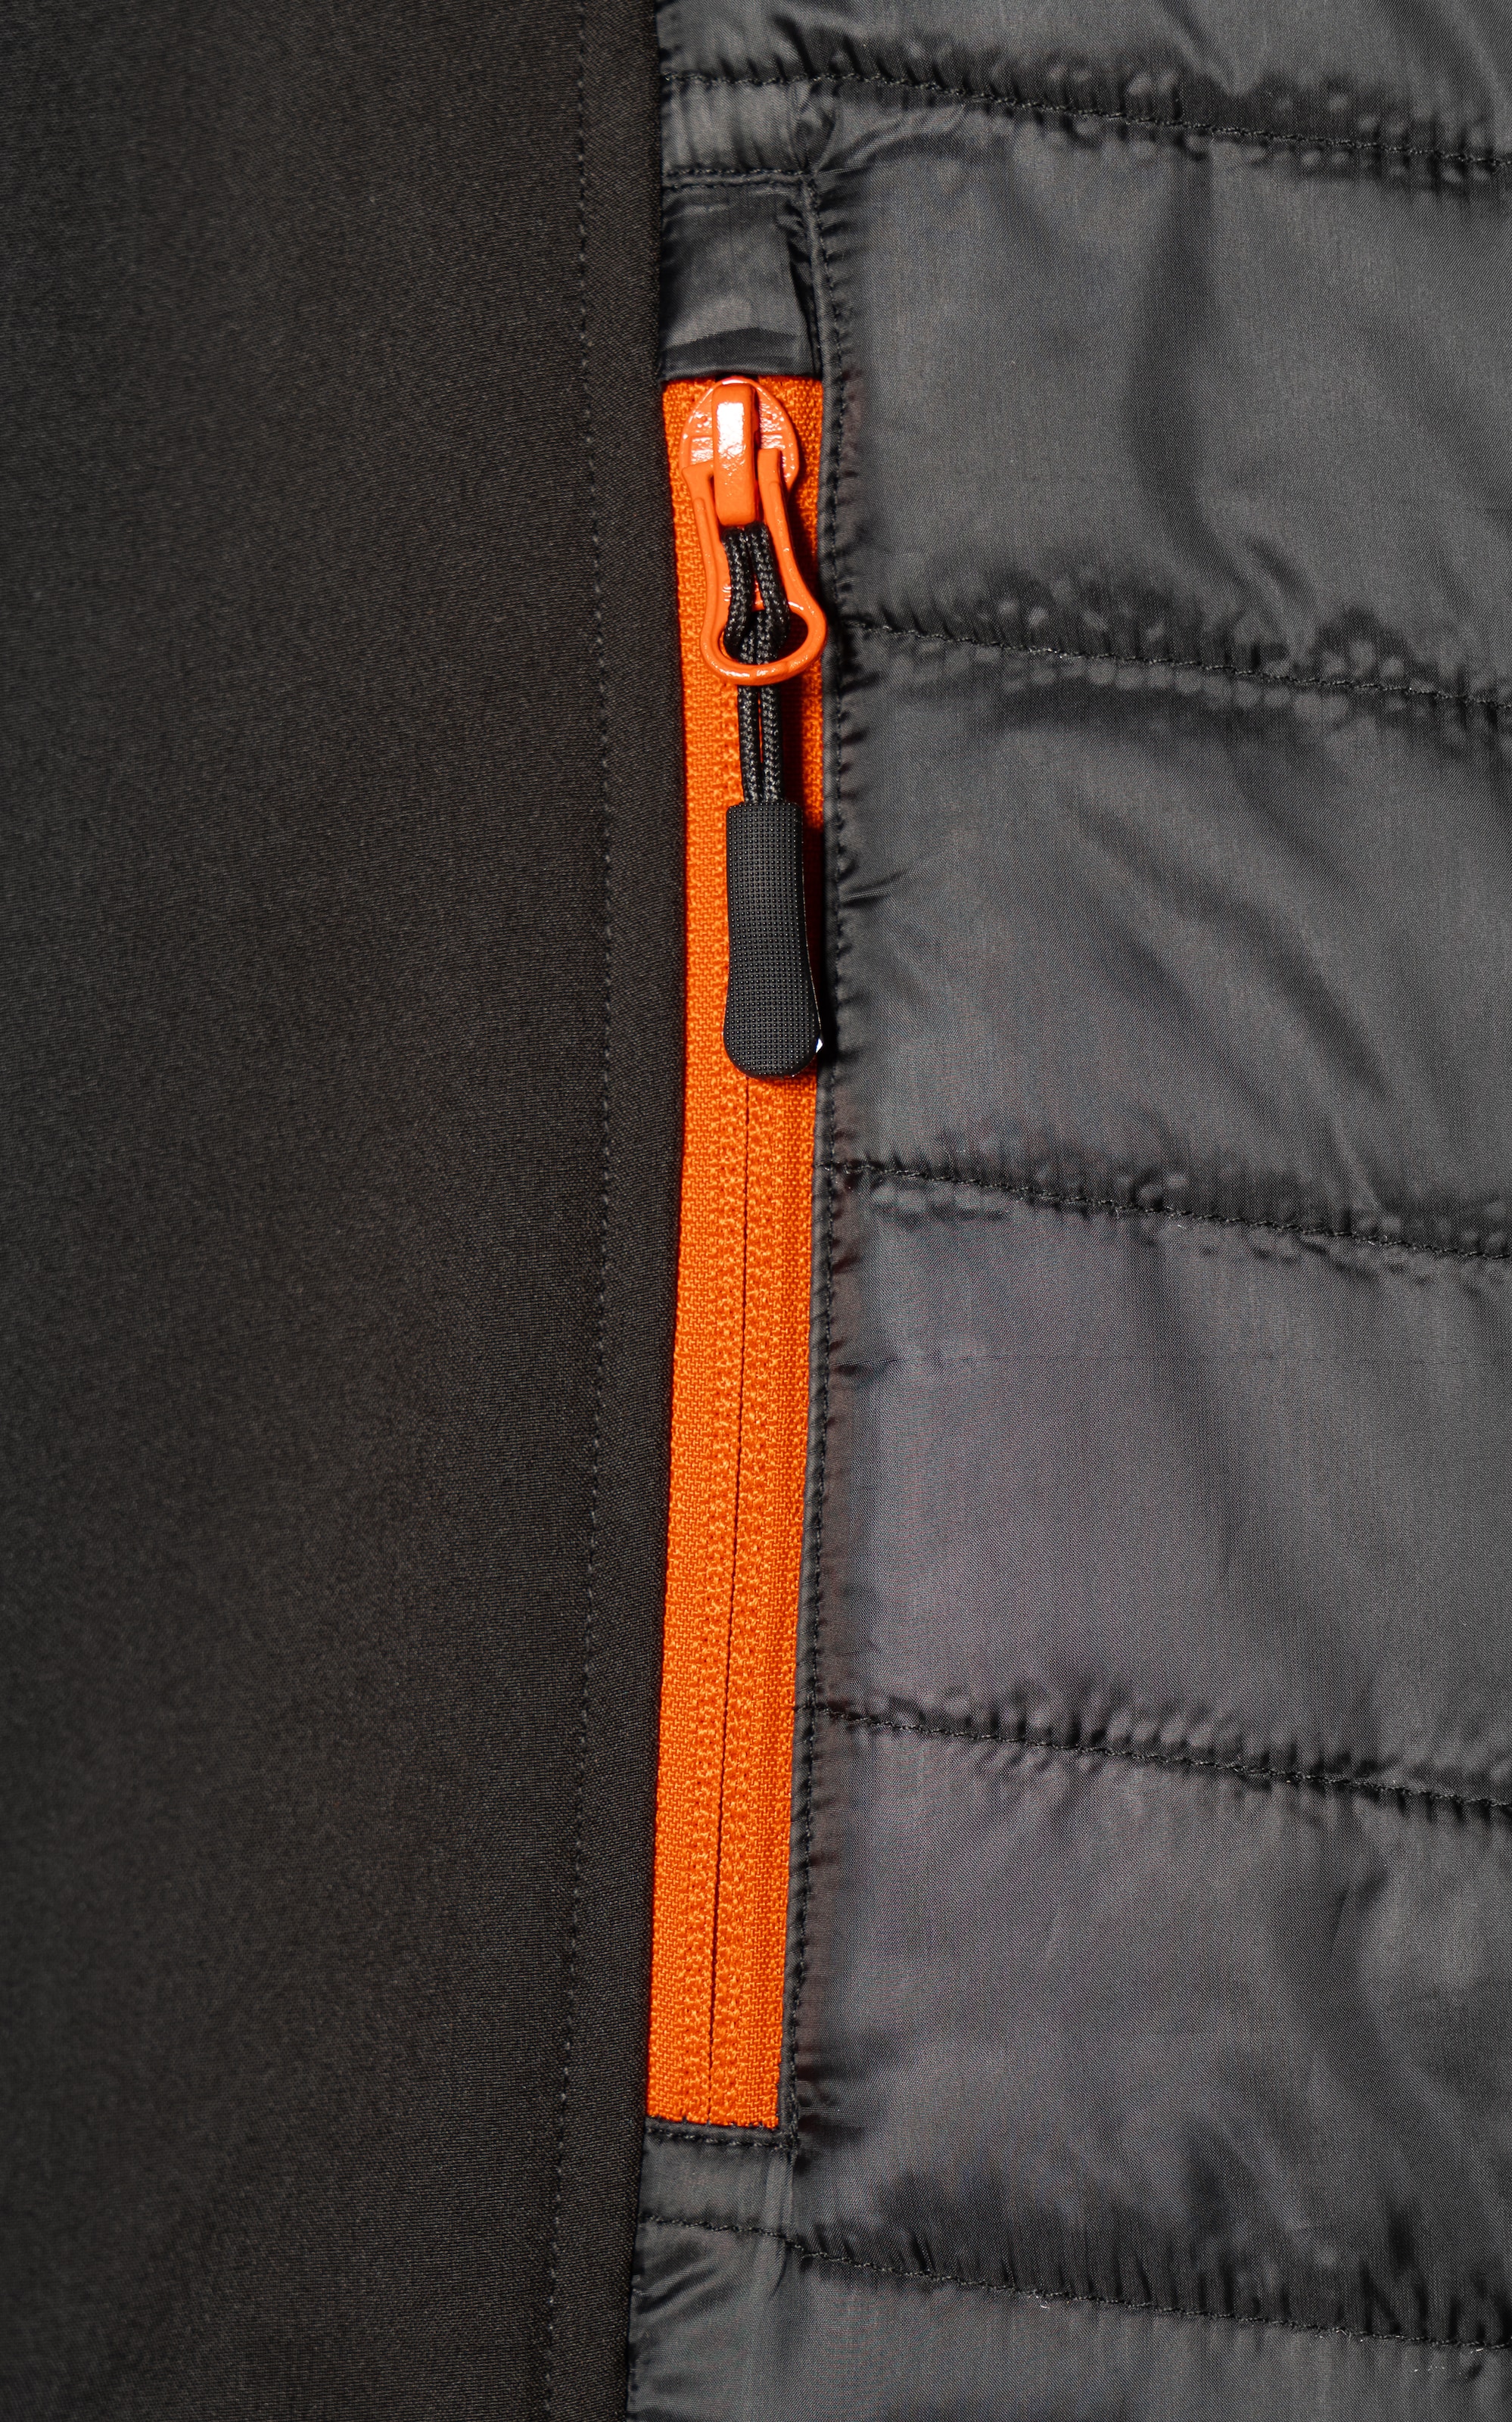 Northern Country Seiteneinsätze mit elastische und Rücken wärmend (bequeme leicht Kinnschutz durch verlängerter angenehm Arbeitsweste Taschen) mit 3 Passform